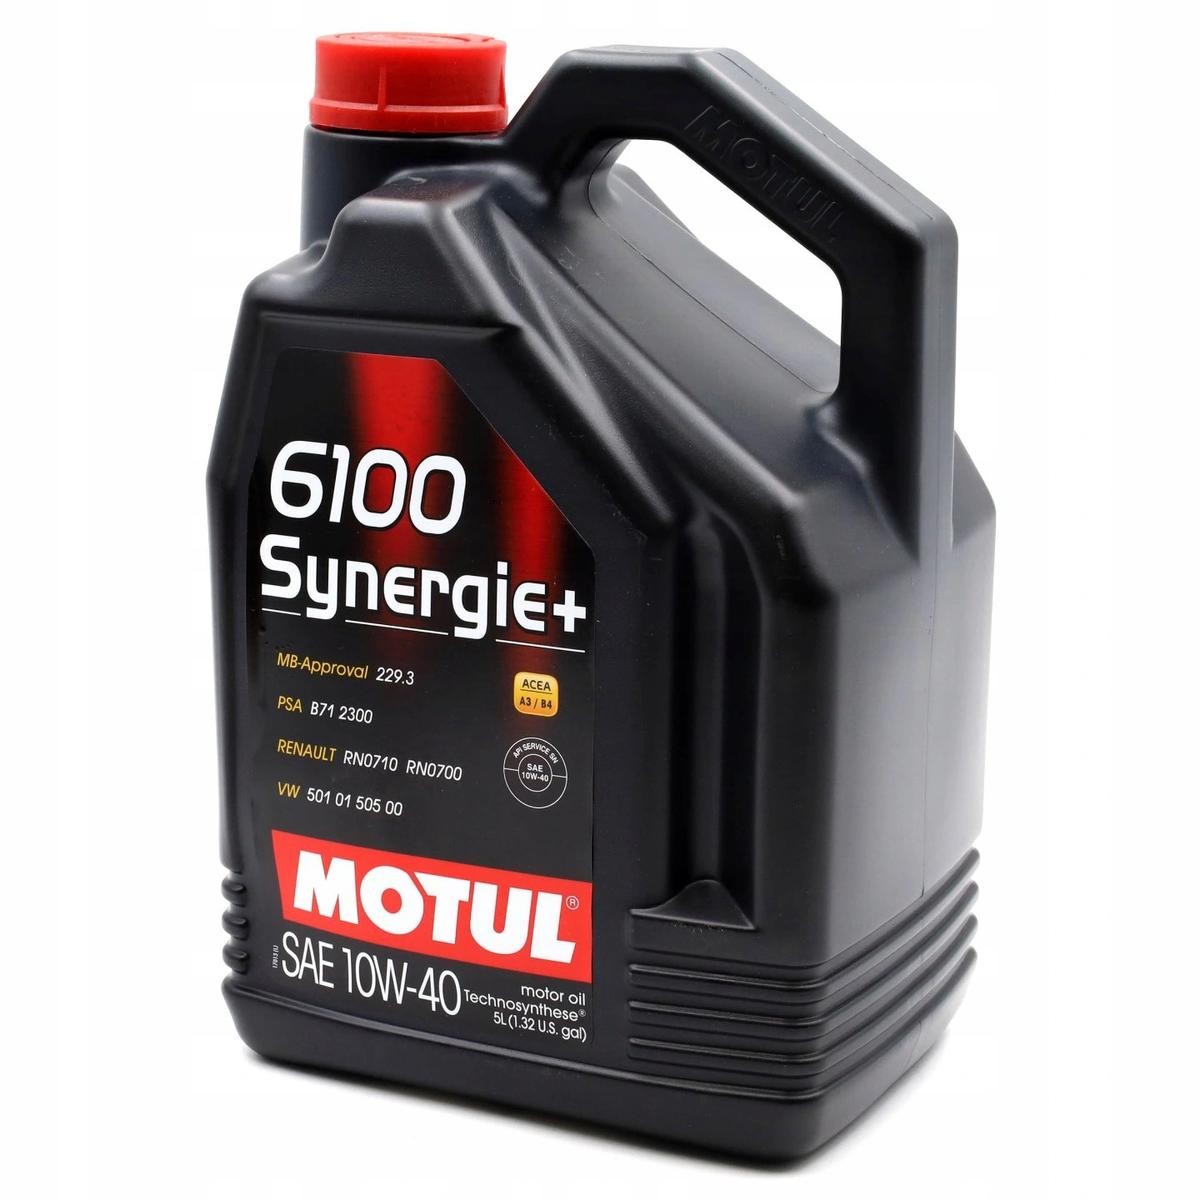 Mitsubishi Motoröl MOTUL 16100 zum günstigen Preis